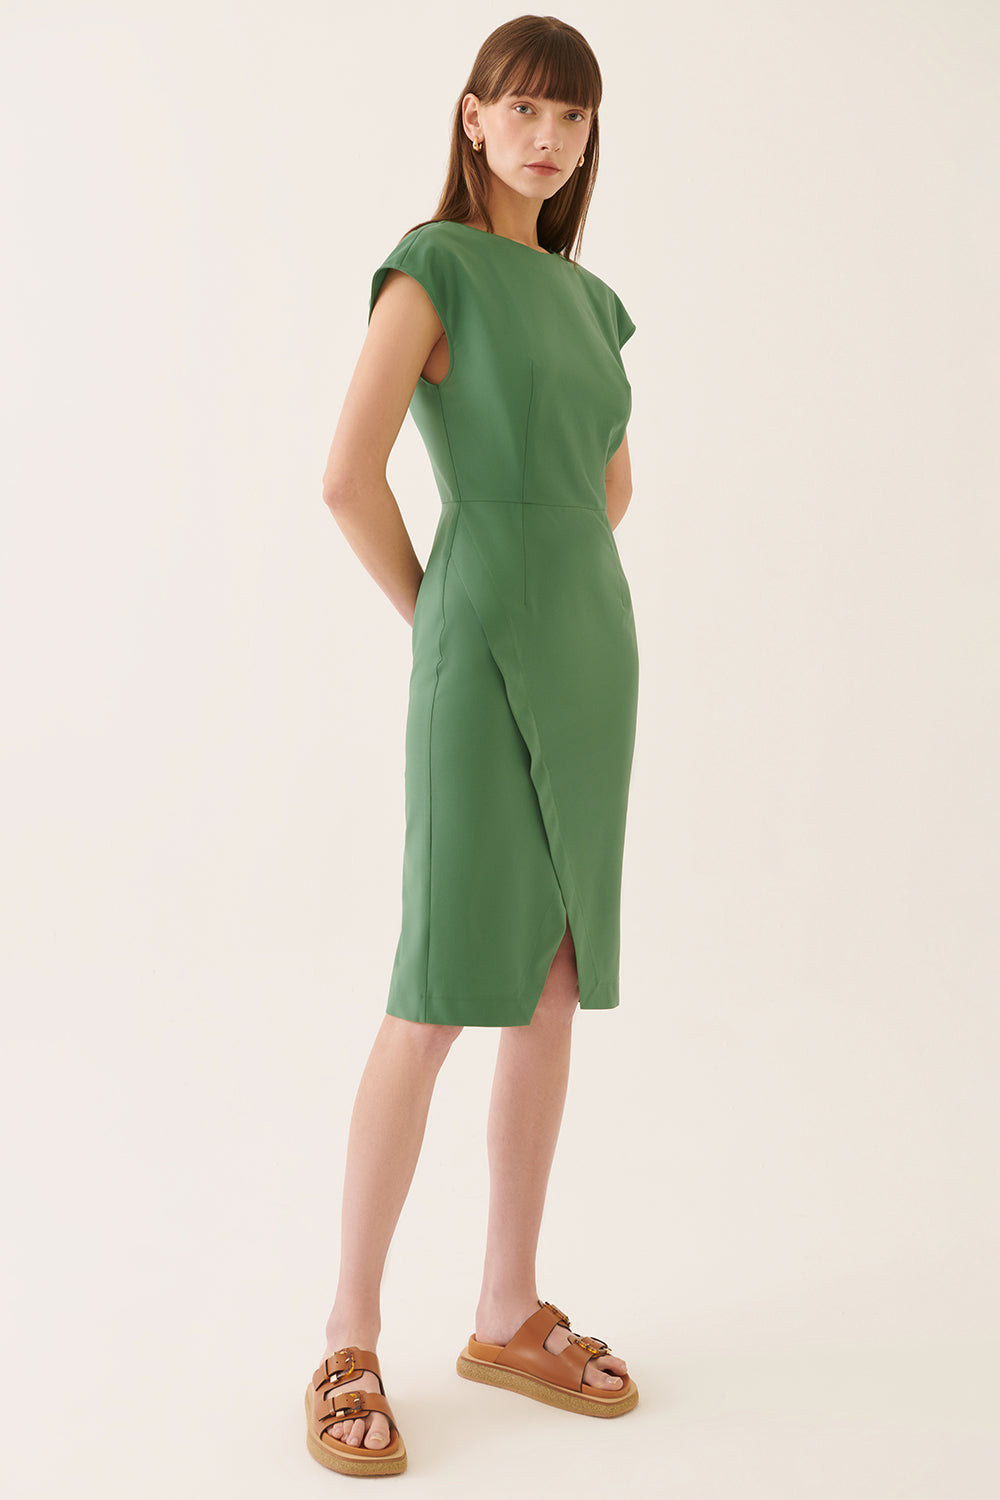 Палмо зелен фустан од Aidas 3052